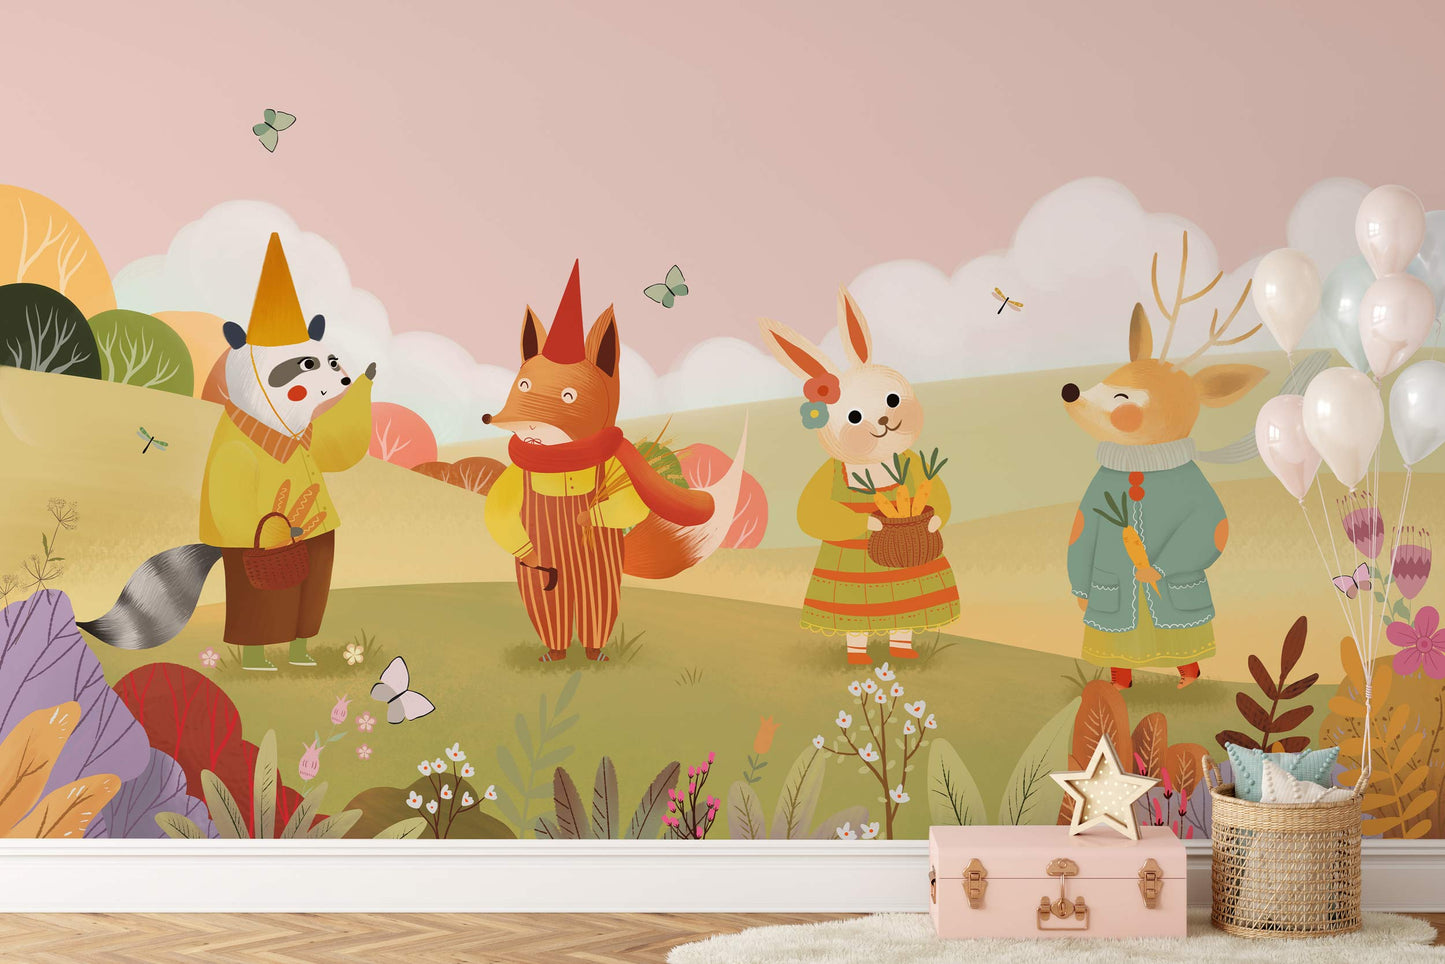 Whimsical Forest Animal Children's Mural Wallpaper